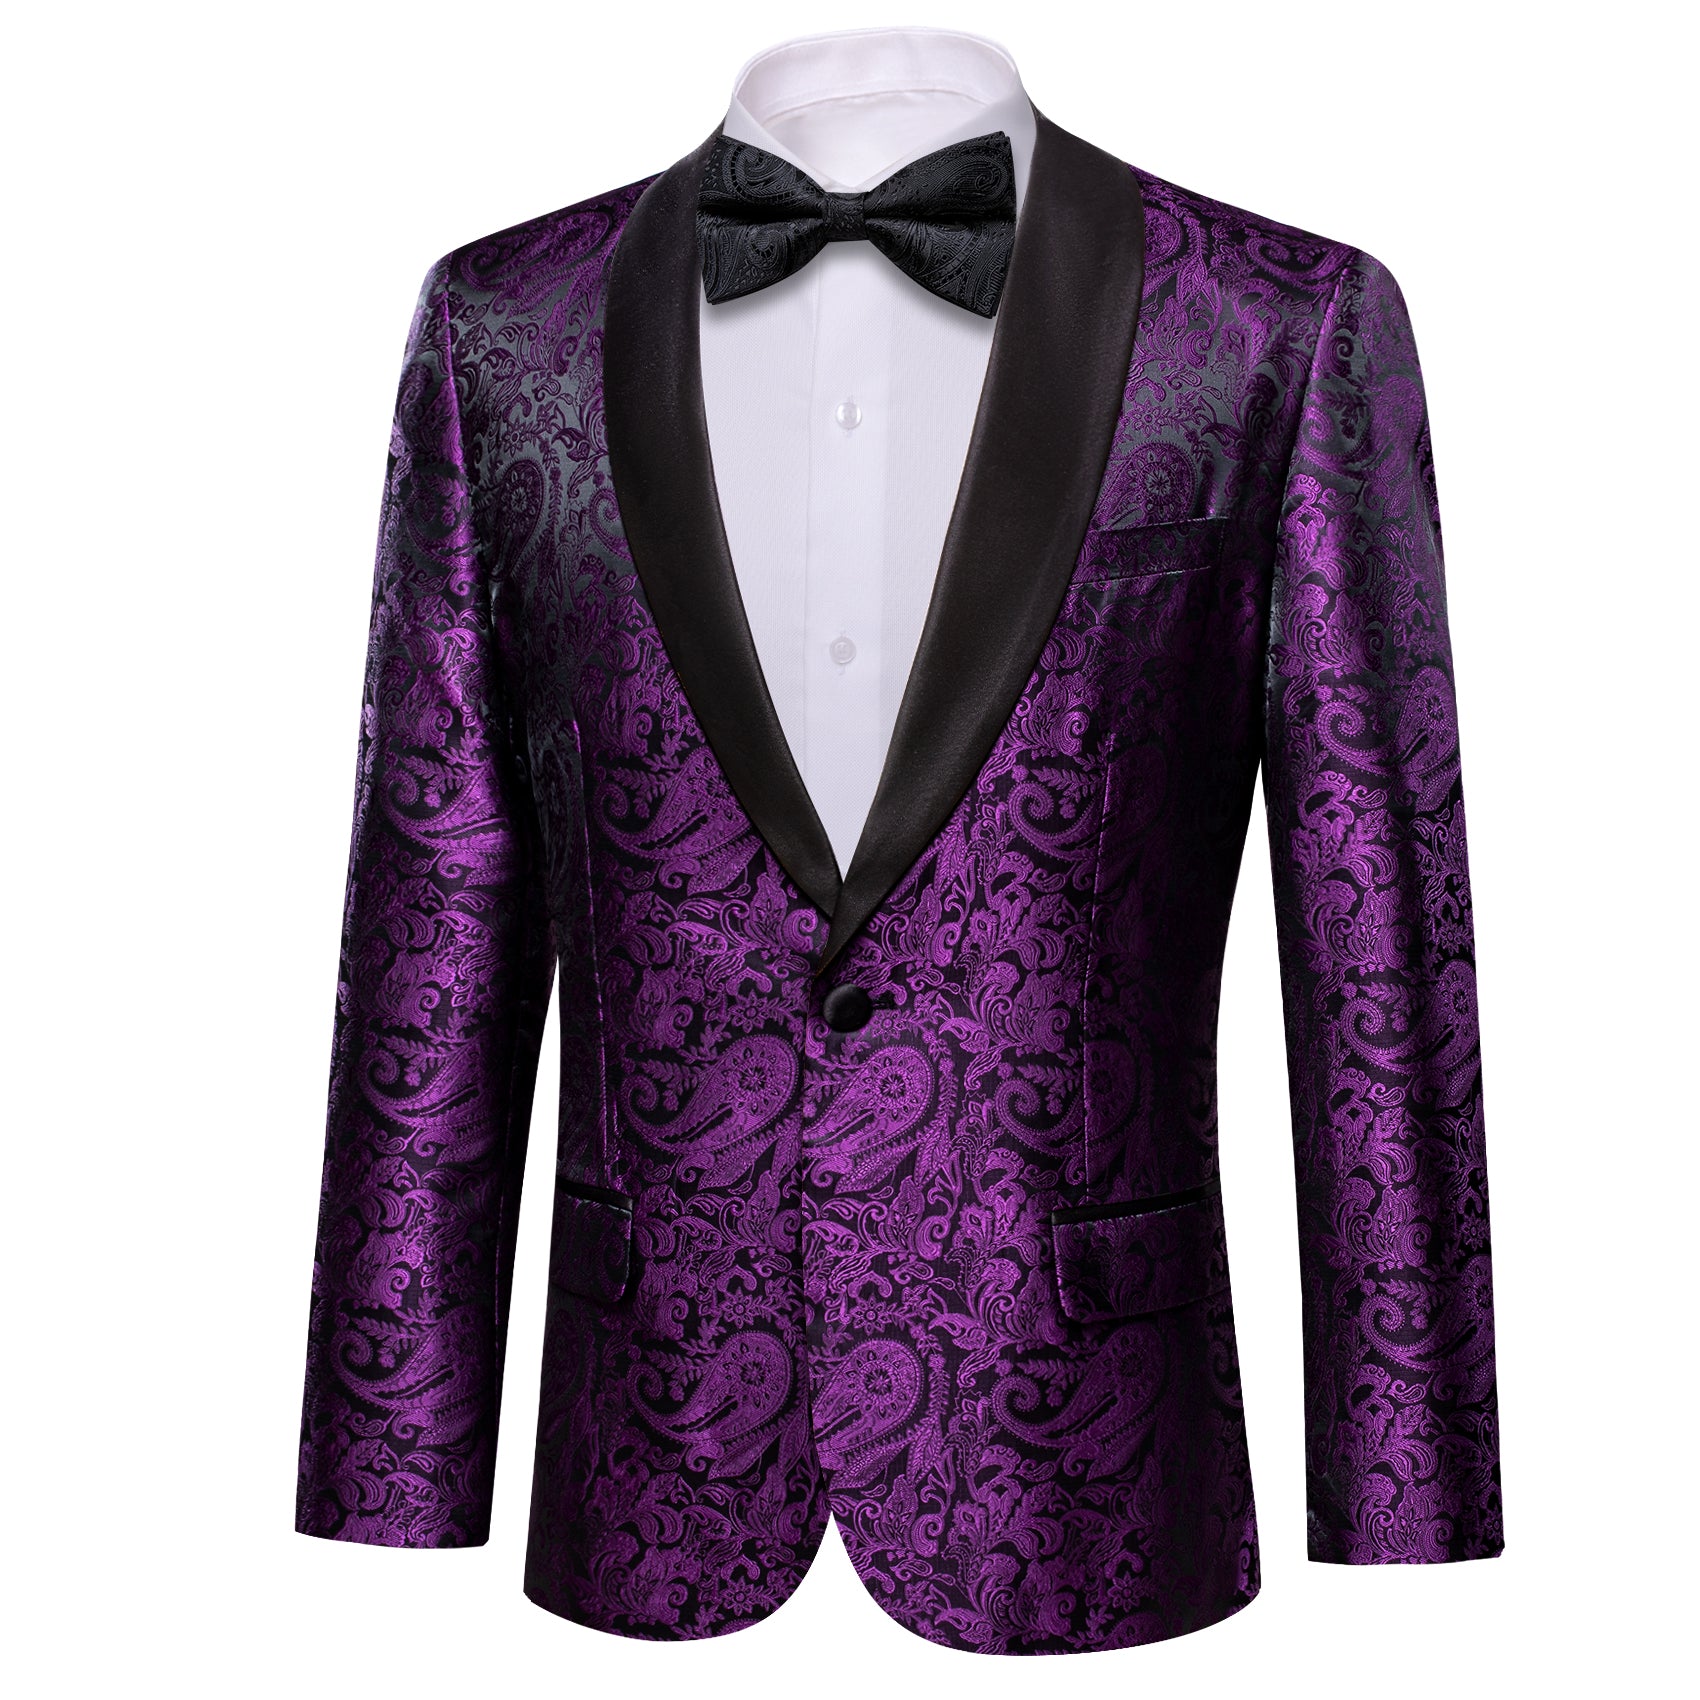 Barry.wang Men's Shawl Collar Suit Purple Paisley Suit Jacket